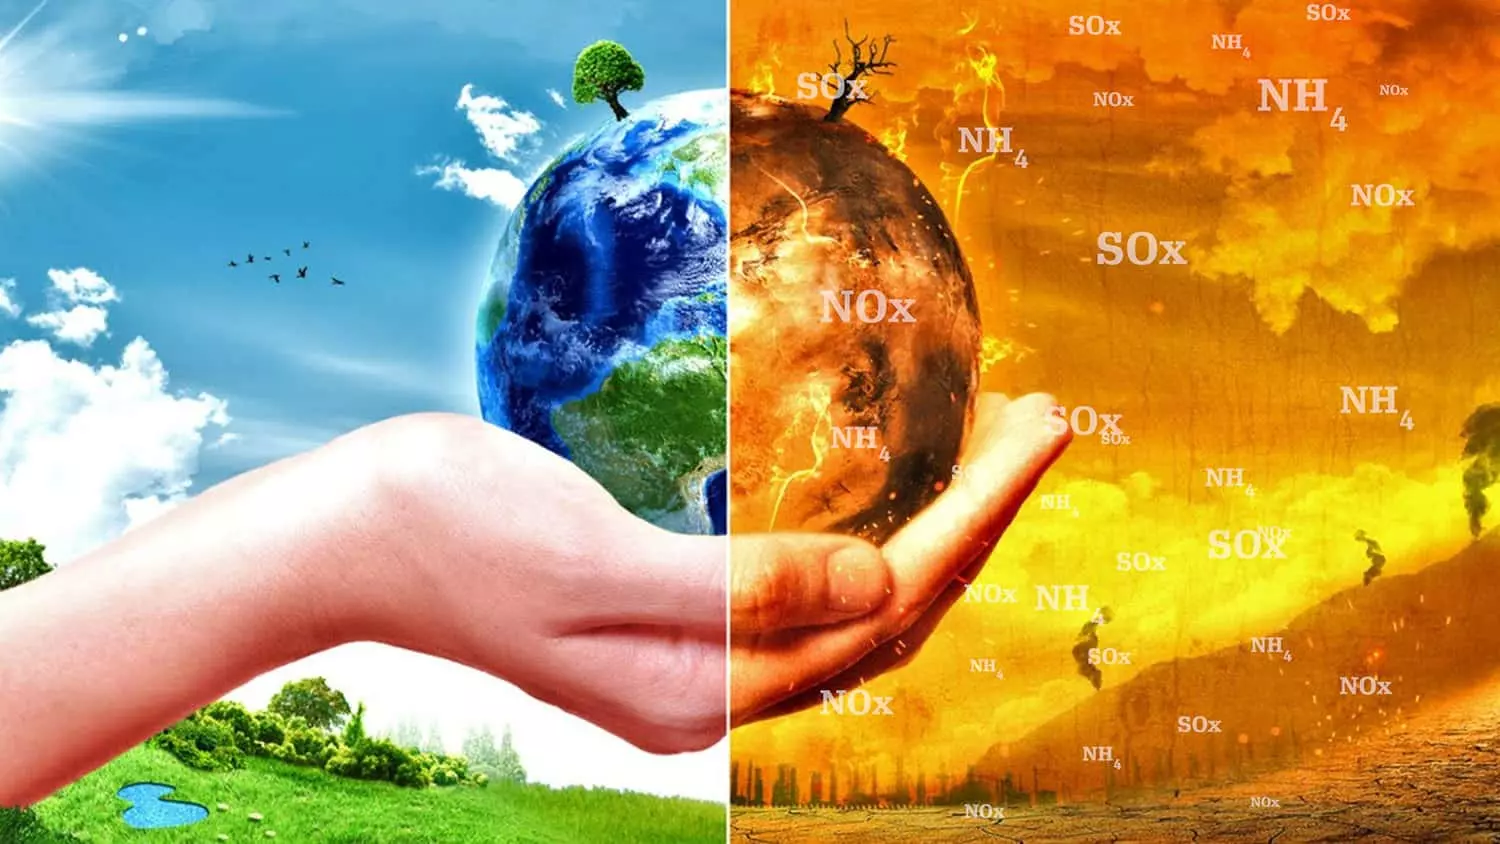 Khí thải NOx là gì? Tác hại và các biện pháp xử lý khí thải NOx hiện nay